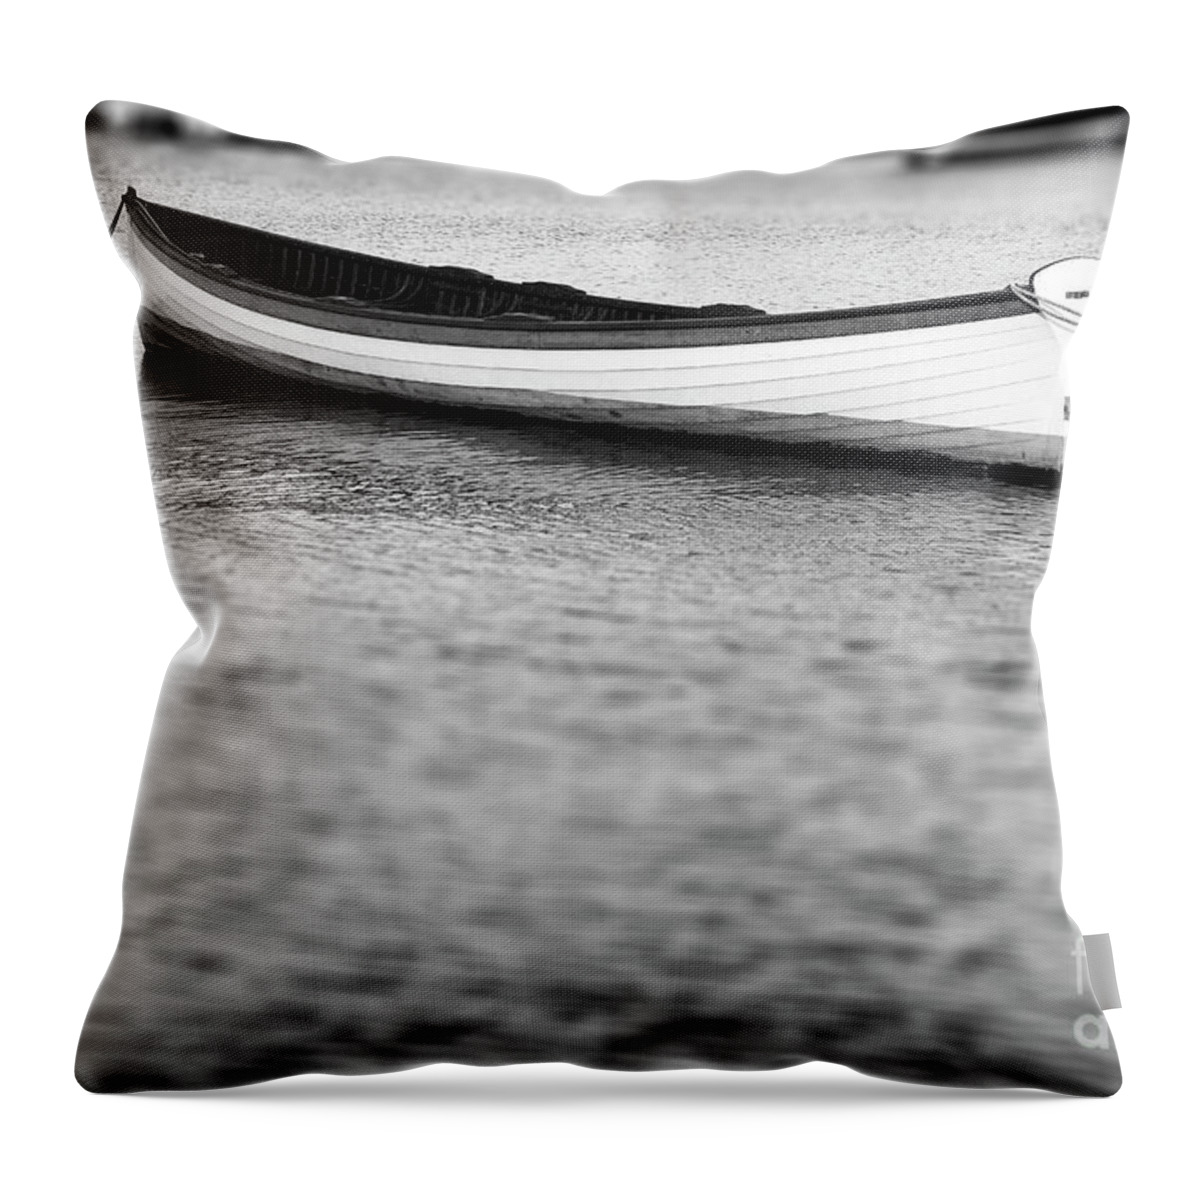 Canoe Throw Pillow featuring the photograph Canoe in harbor by Tony Cordoza